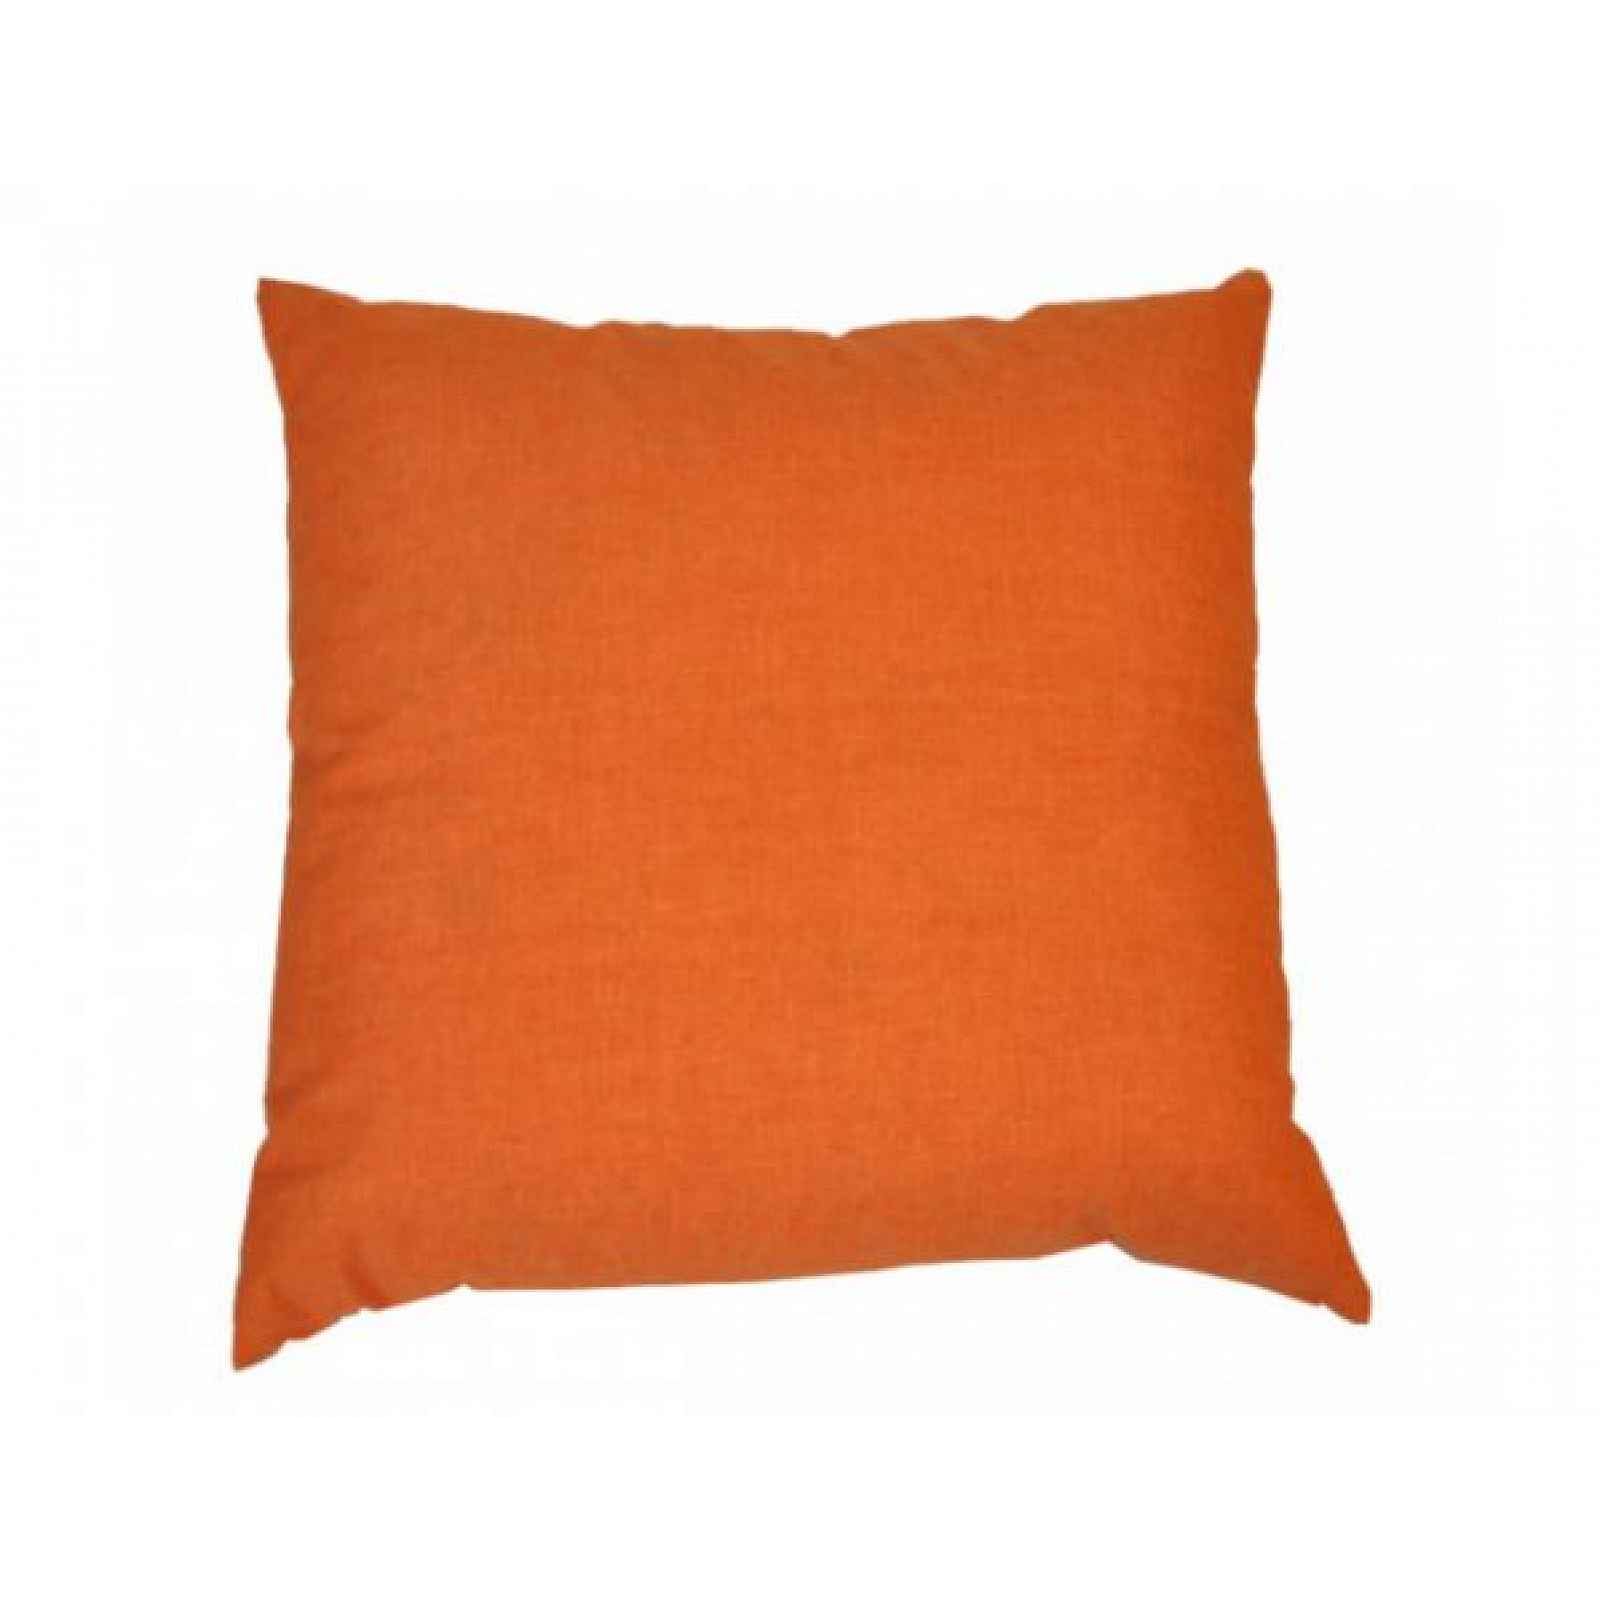 Polštář 50x50 cm na paletové sezení - oranžový melír